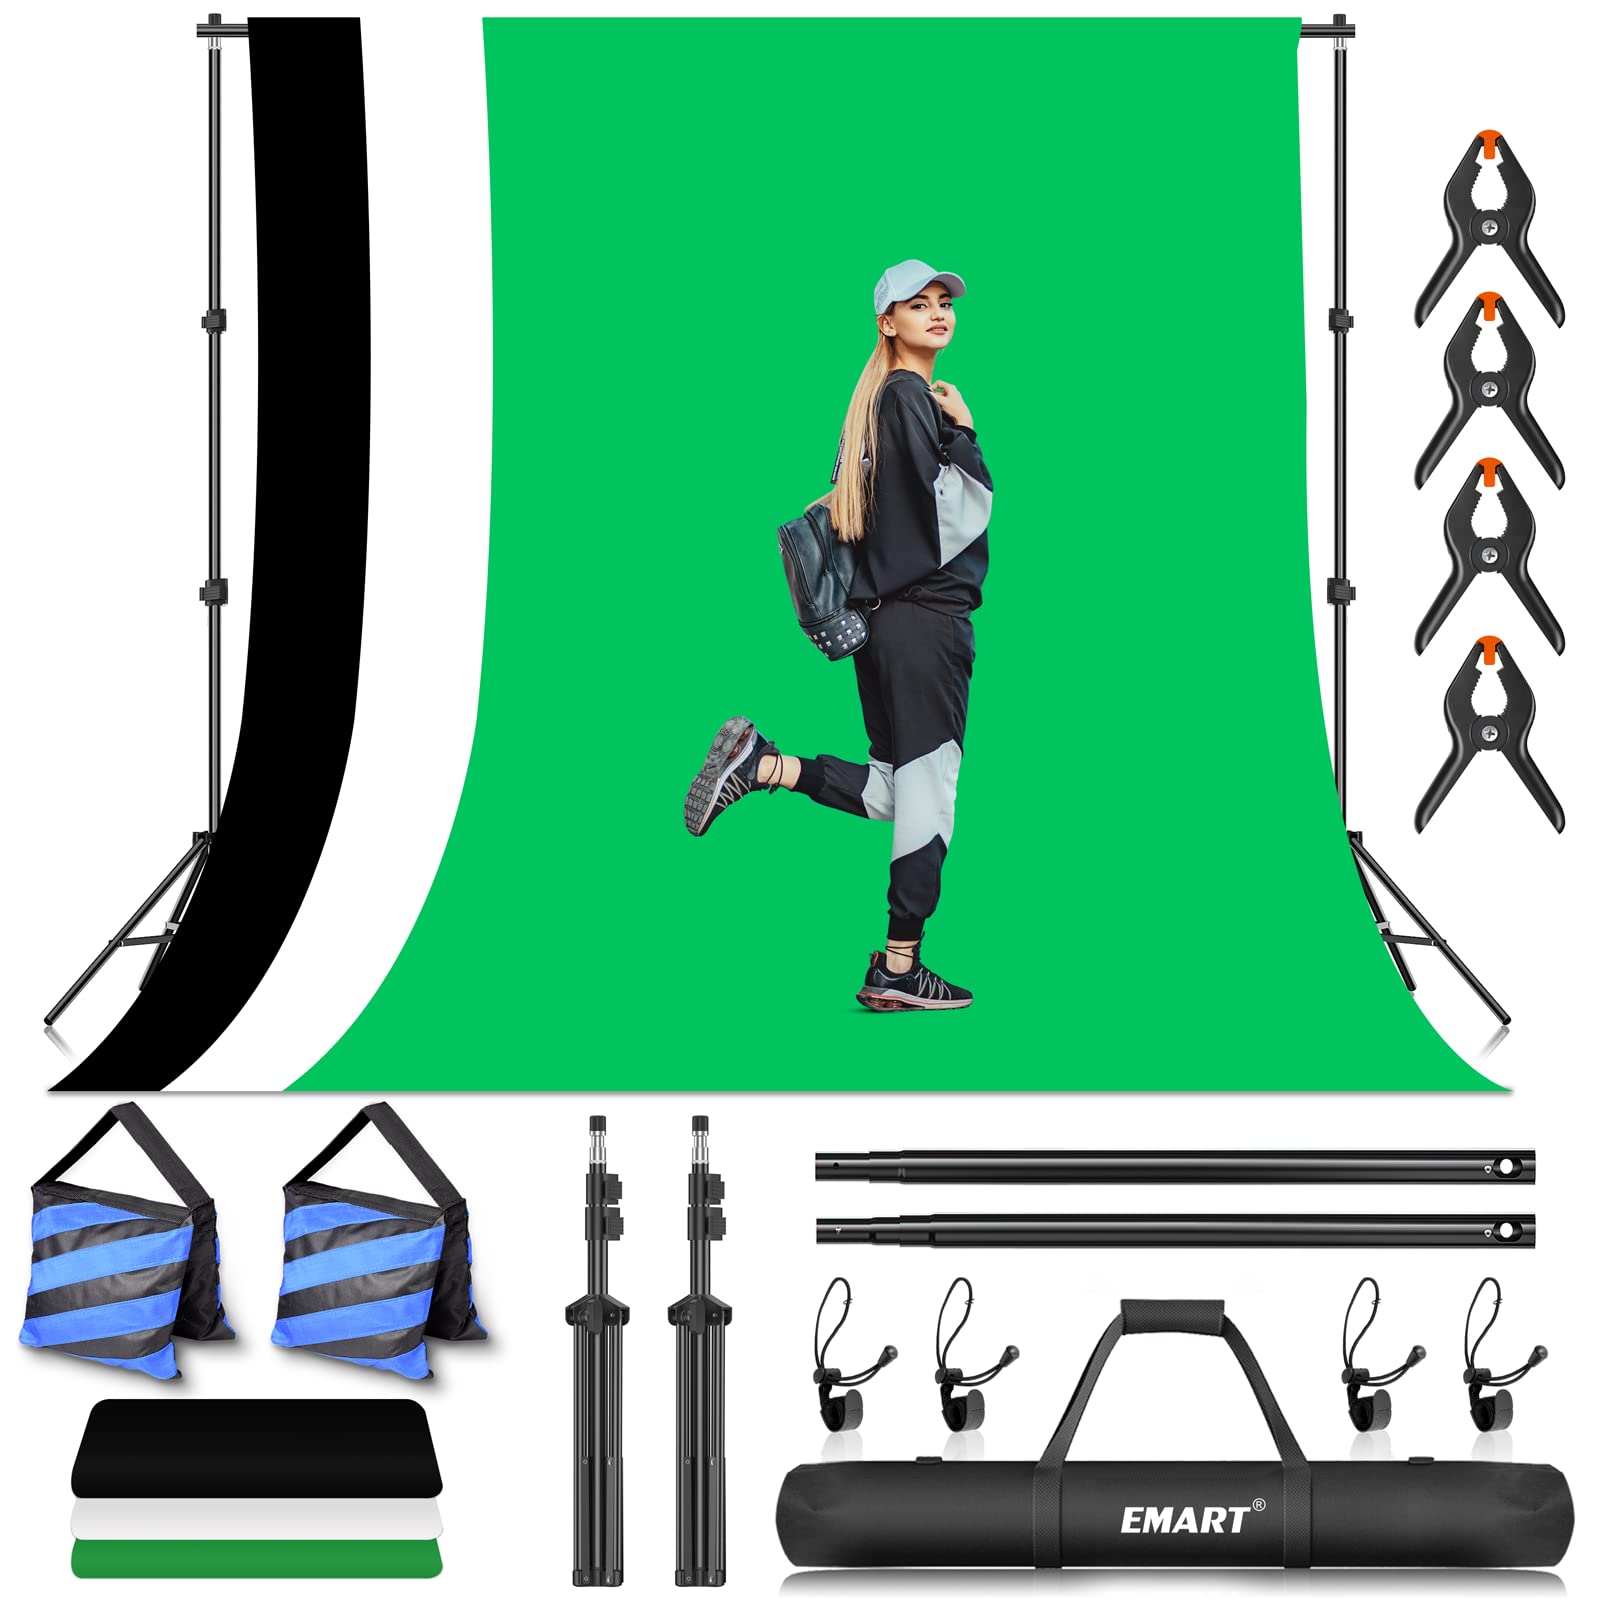 EMART Fotostudio Hintergrund Ständer Set mit Stoff, Hintergrundsystem 2m×3m mit Foto Hintergrund 1,8m×2,8m (Schwarz, Weiß und Grün) für Produkt Porträt YouTube Video Fotografie